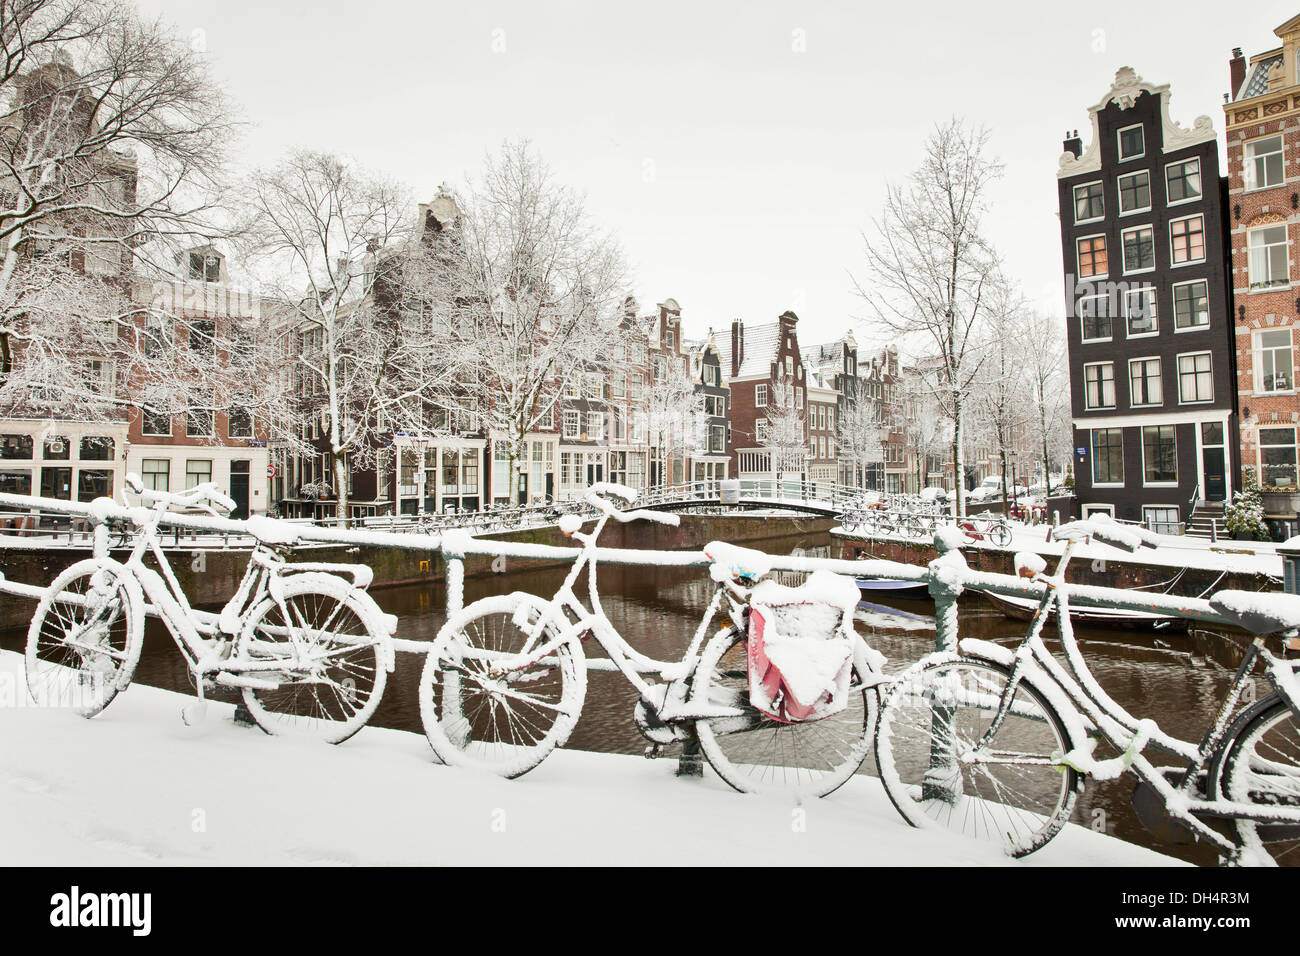 Les Pays-Bas, Amsterdam, maisons en canal appelé Canal Brouwersgracht. Unesco World Heritage site. Les vélos. L'hiver, la neige Banque D'Images